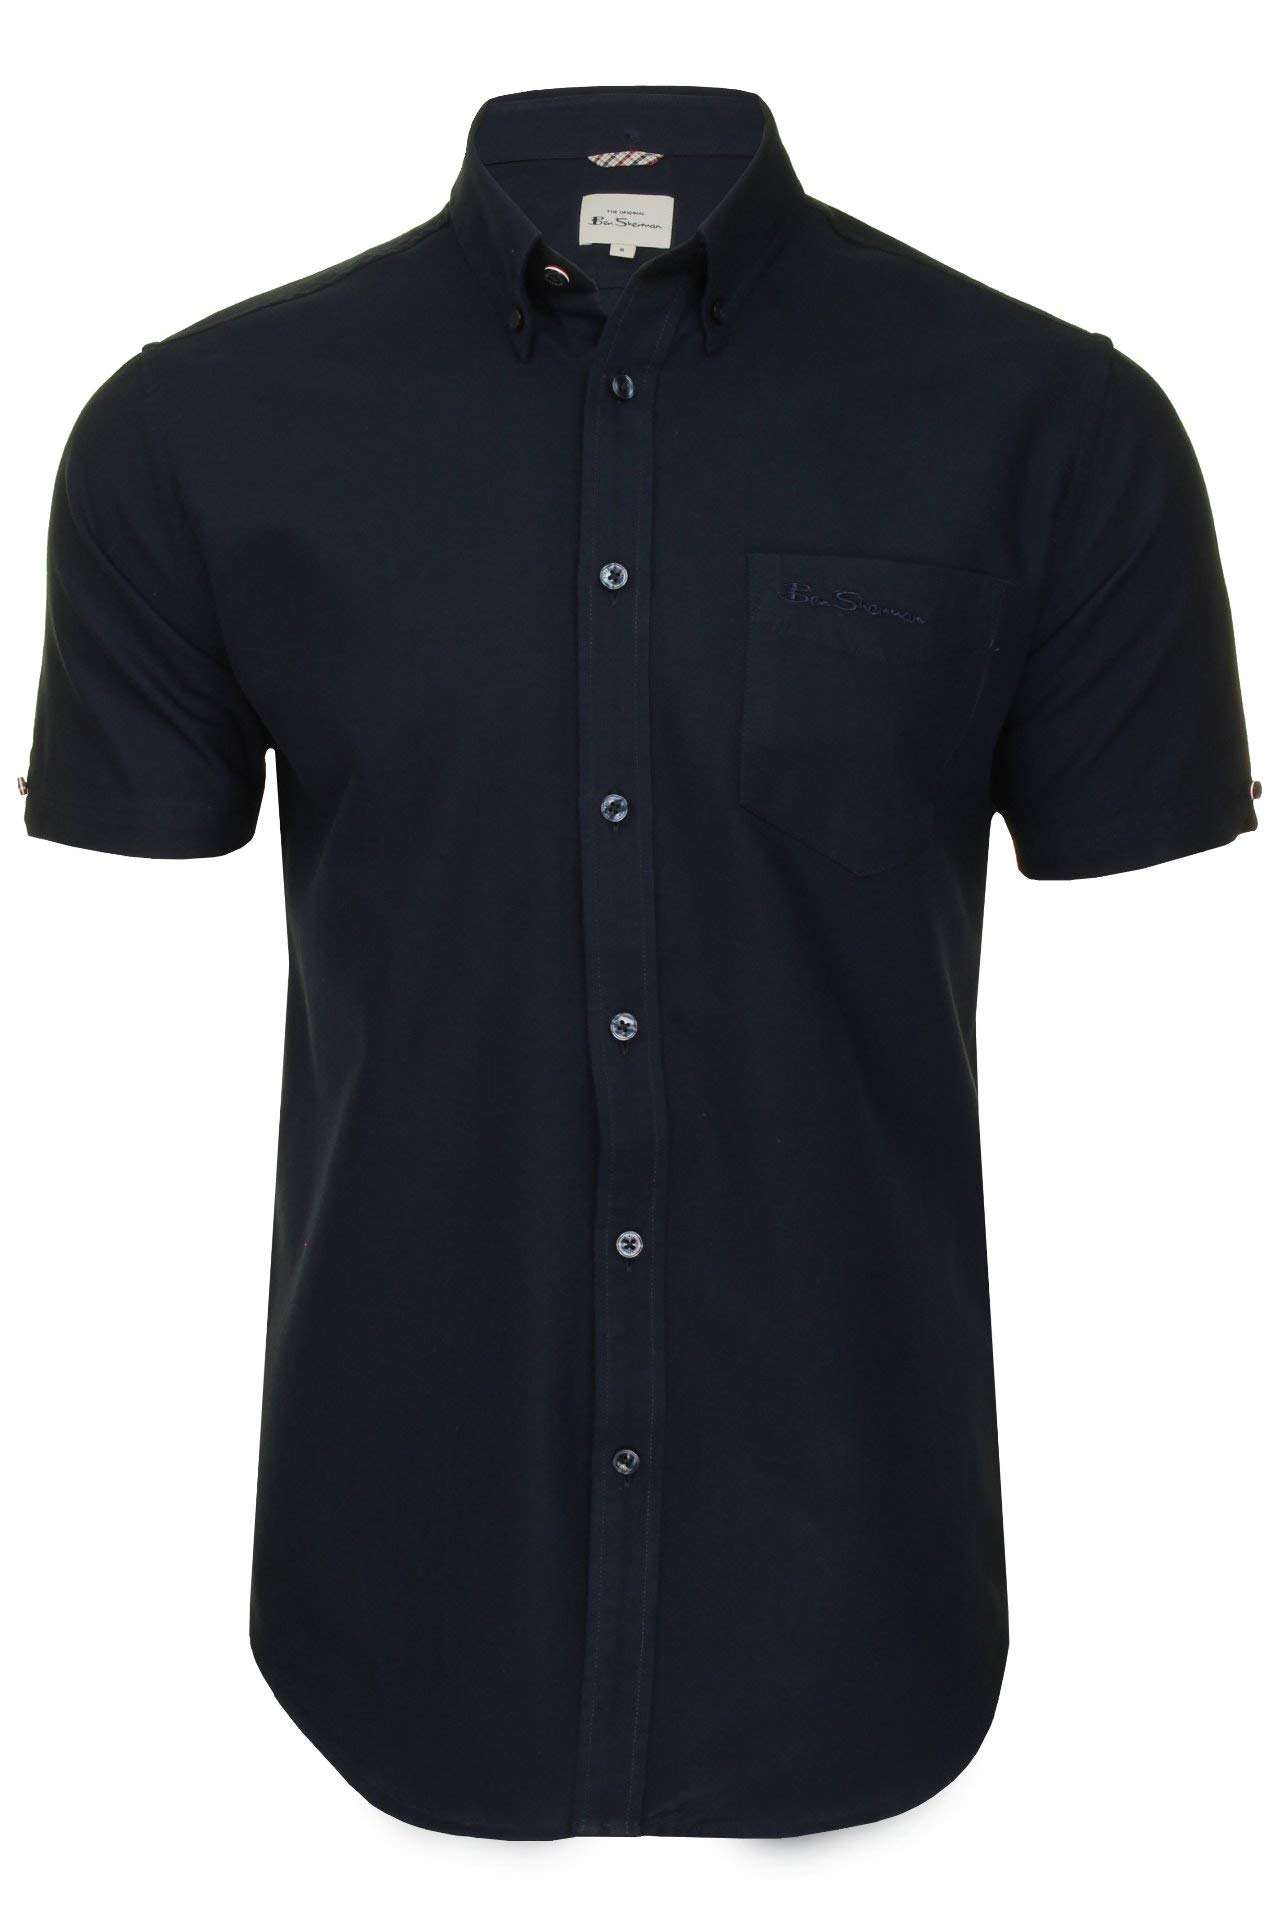 Ben Sherman Herrenhemd mit Button-Down-Kragen, Oxford-Gewebe, kurzärmlig (Dark Navy (Embroidered Pocket Logo)) L